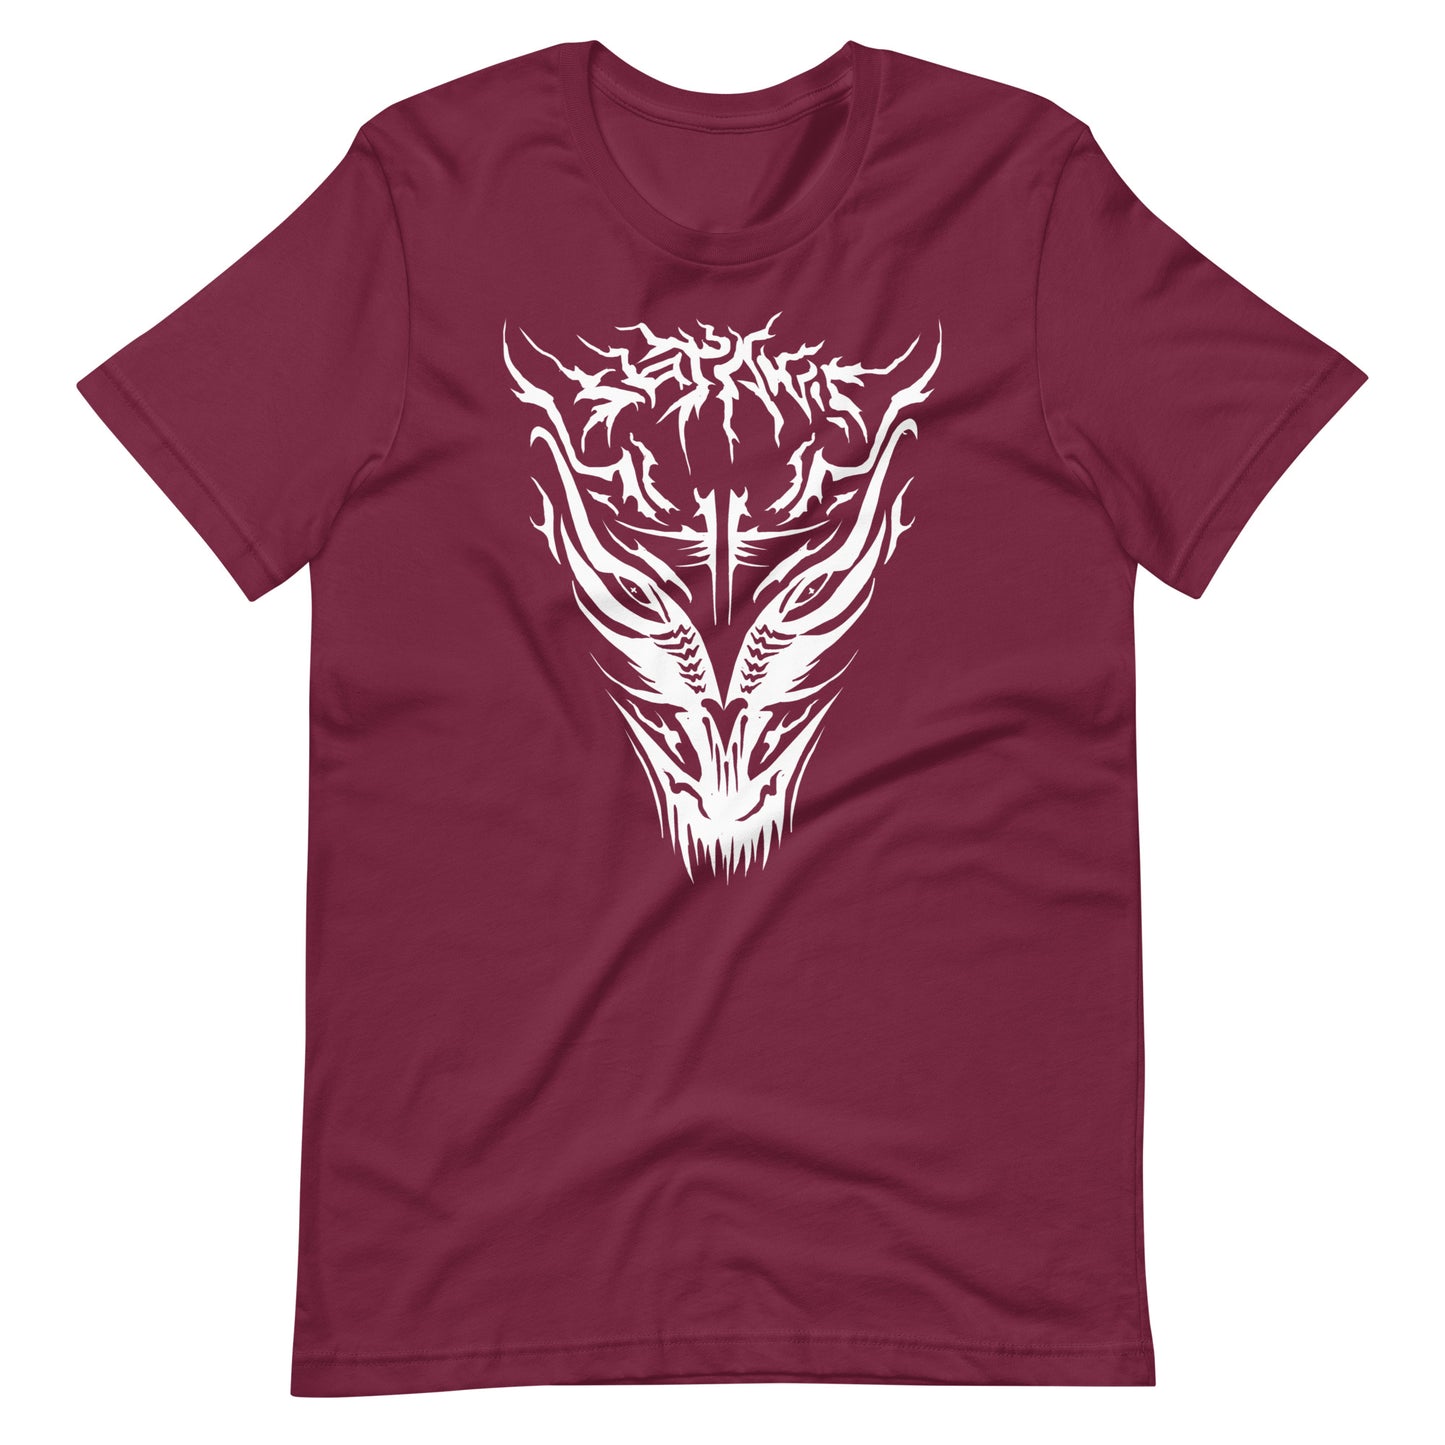 Demon - Men's t-shirt - Maroon Front